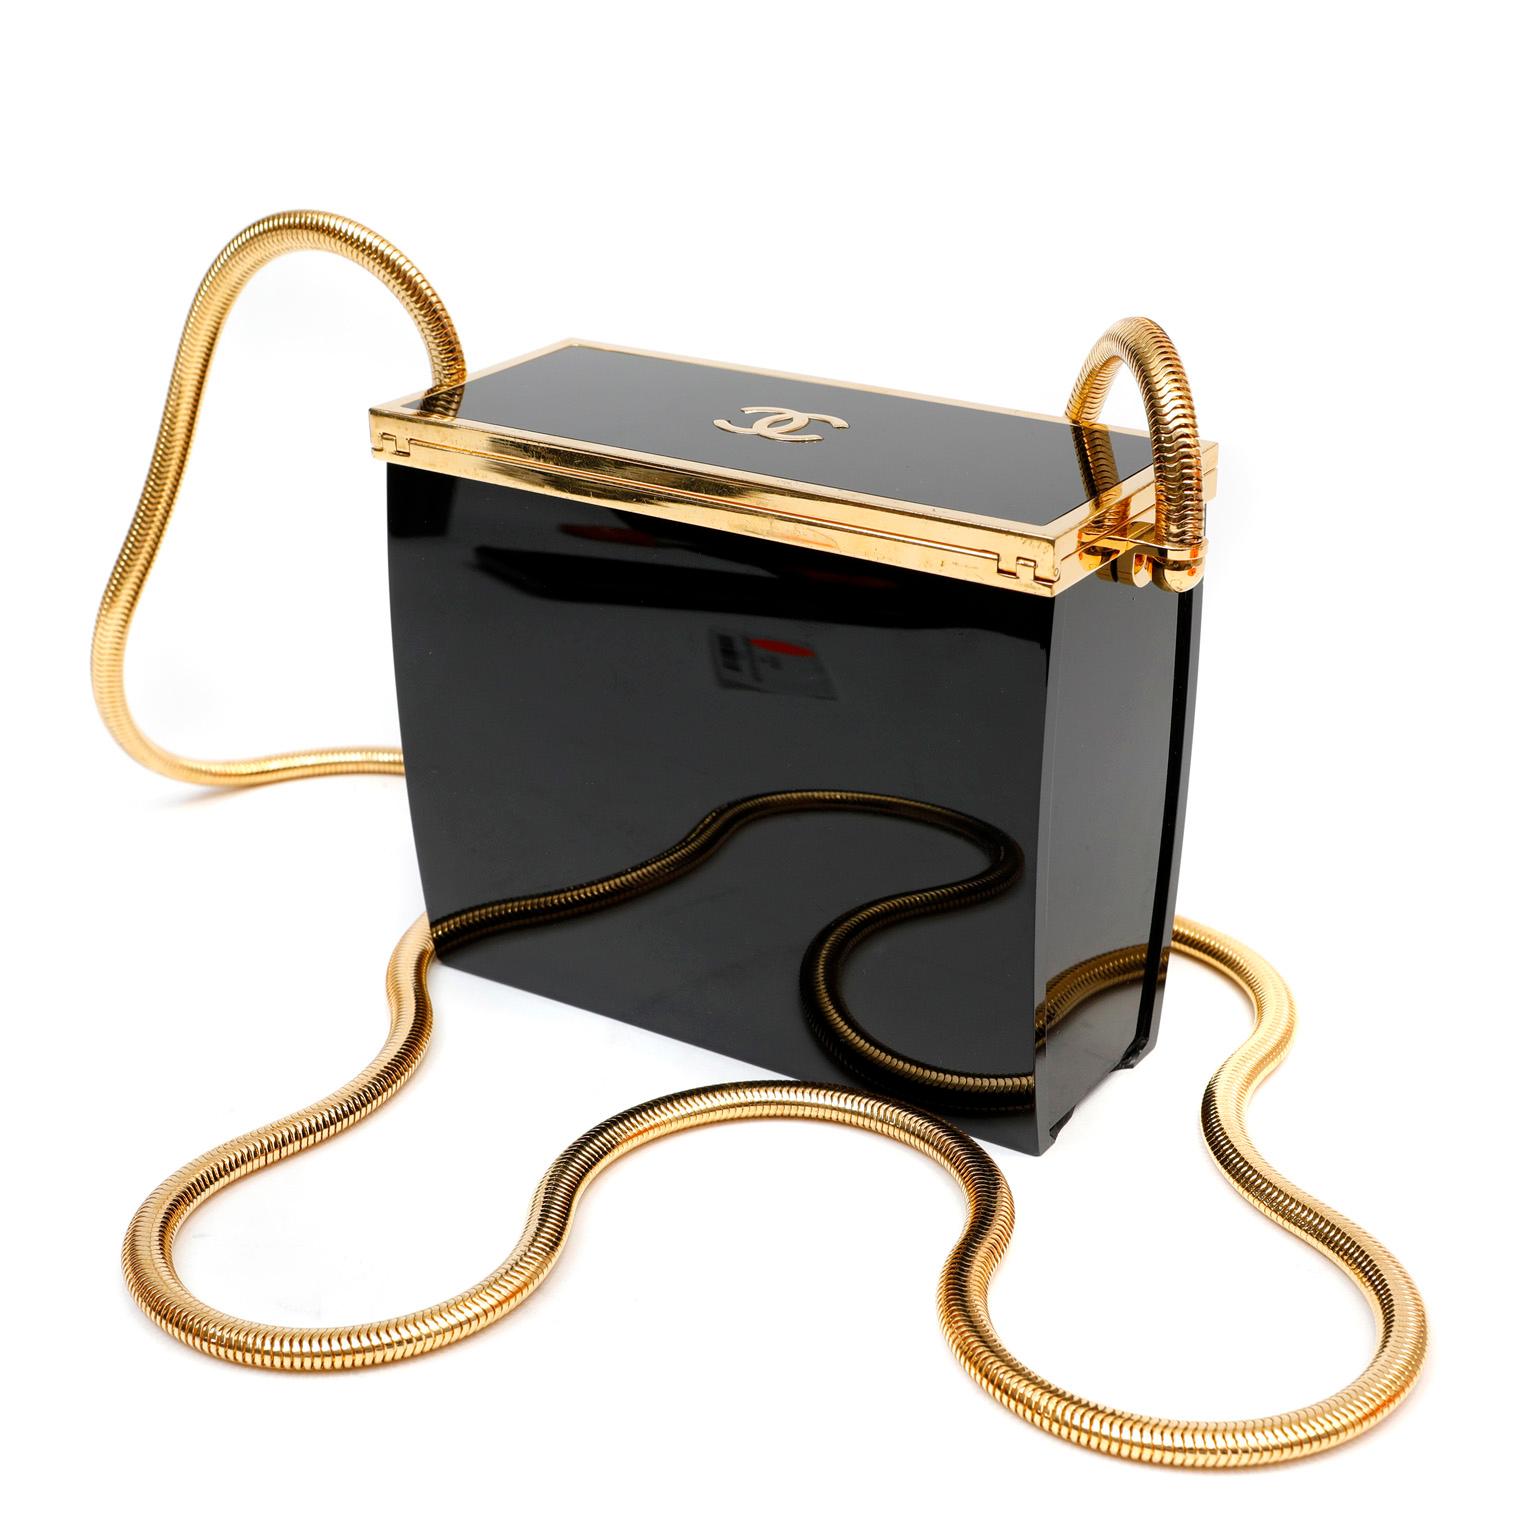 Diese authentische Chanel Black Resin Evening Bag ist in ausgezeichnetem Vintage-Zustand aus den späten 1980er Jahren Ein seltenes Stück, das ein Muss für jeden Sammler ist. Die rechteckige, strukturierte Tasche aus poliertem schwarzem Harz ist mit